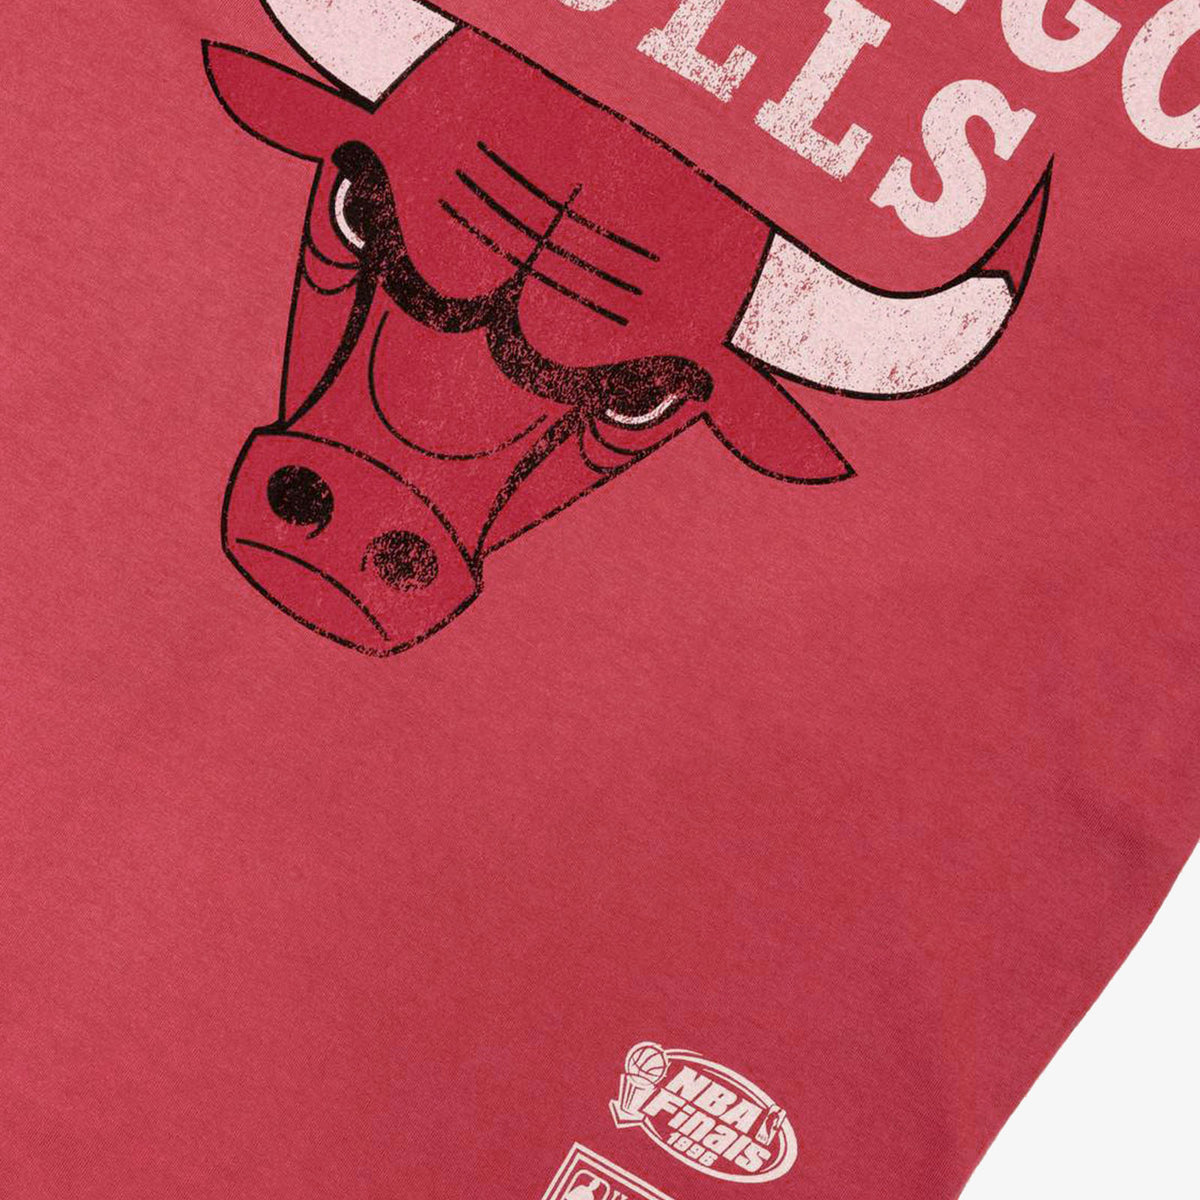 Mitchell & Ness Chicago Bulls Last Dance Tee Shirt Medium